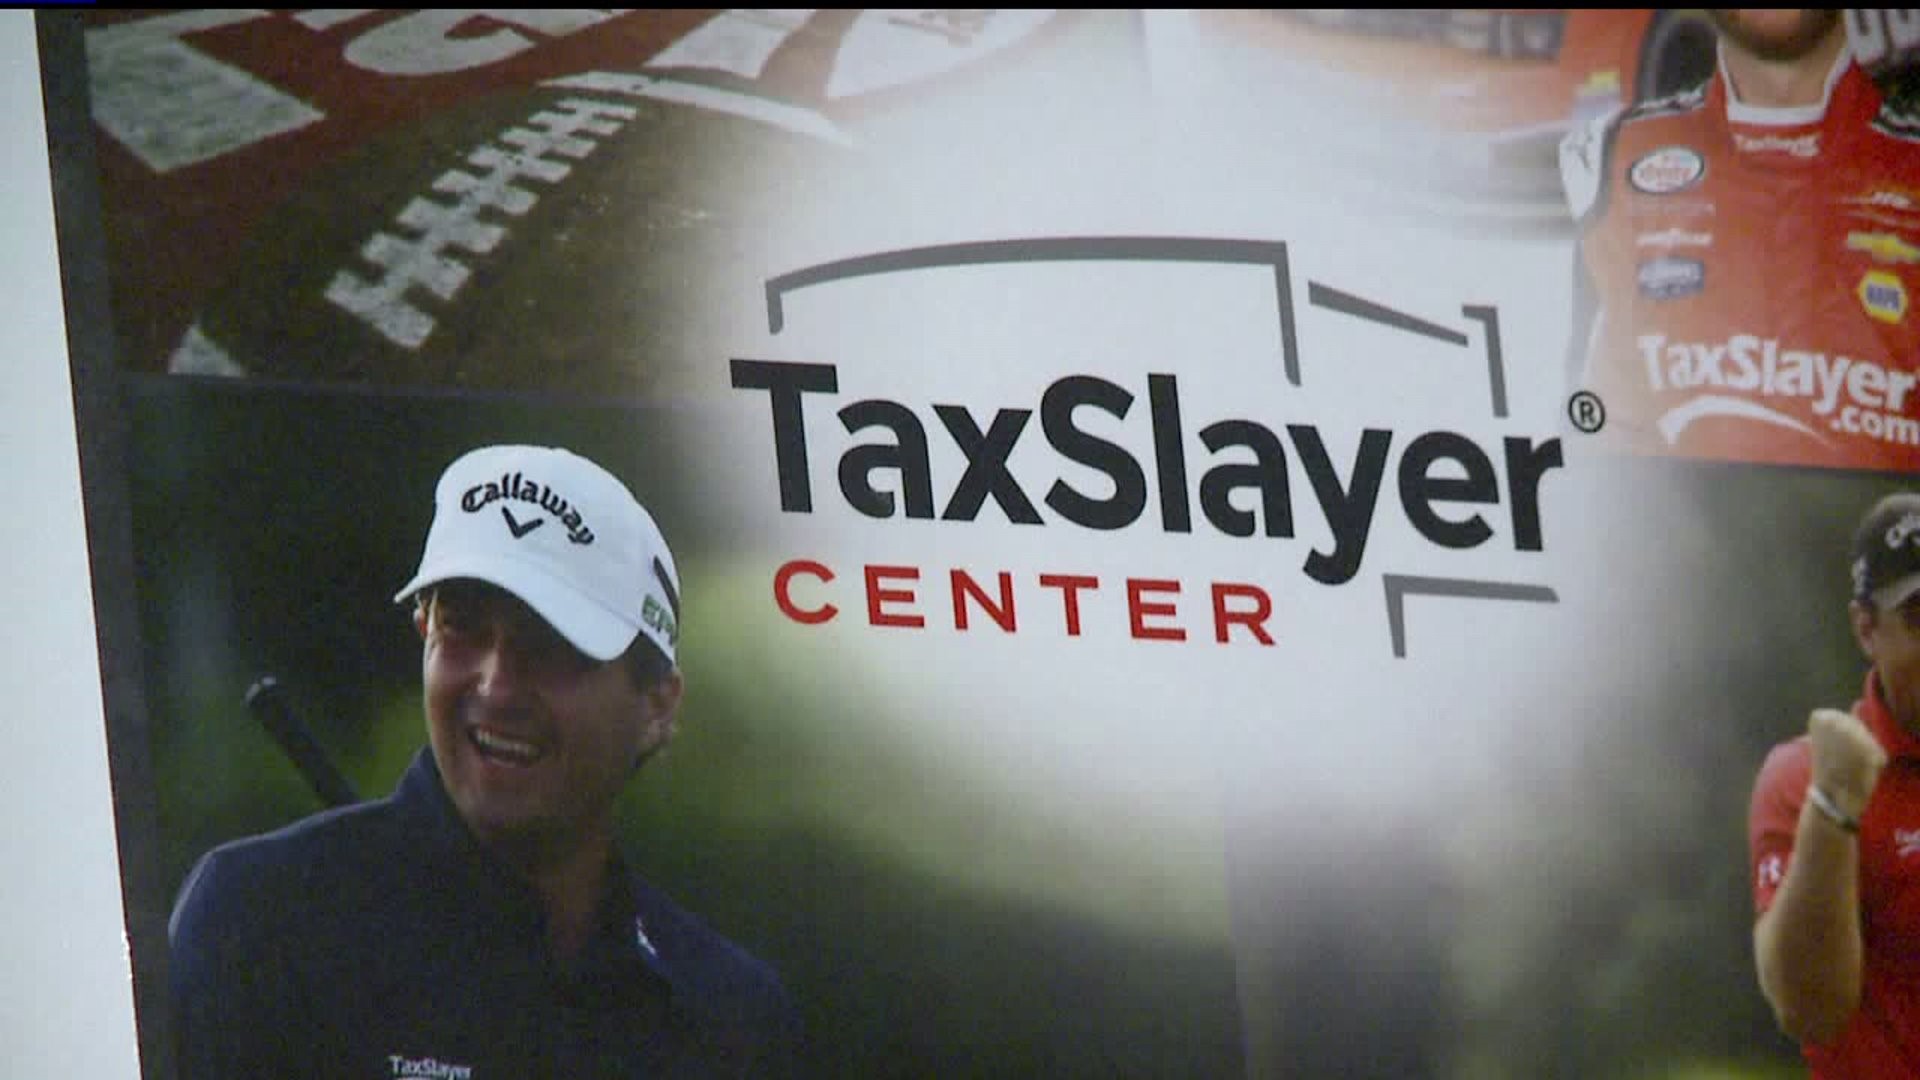 iWireless Center renamed TaxSlayer Center